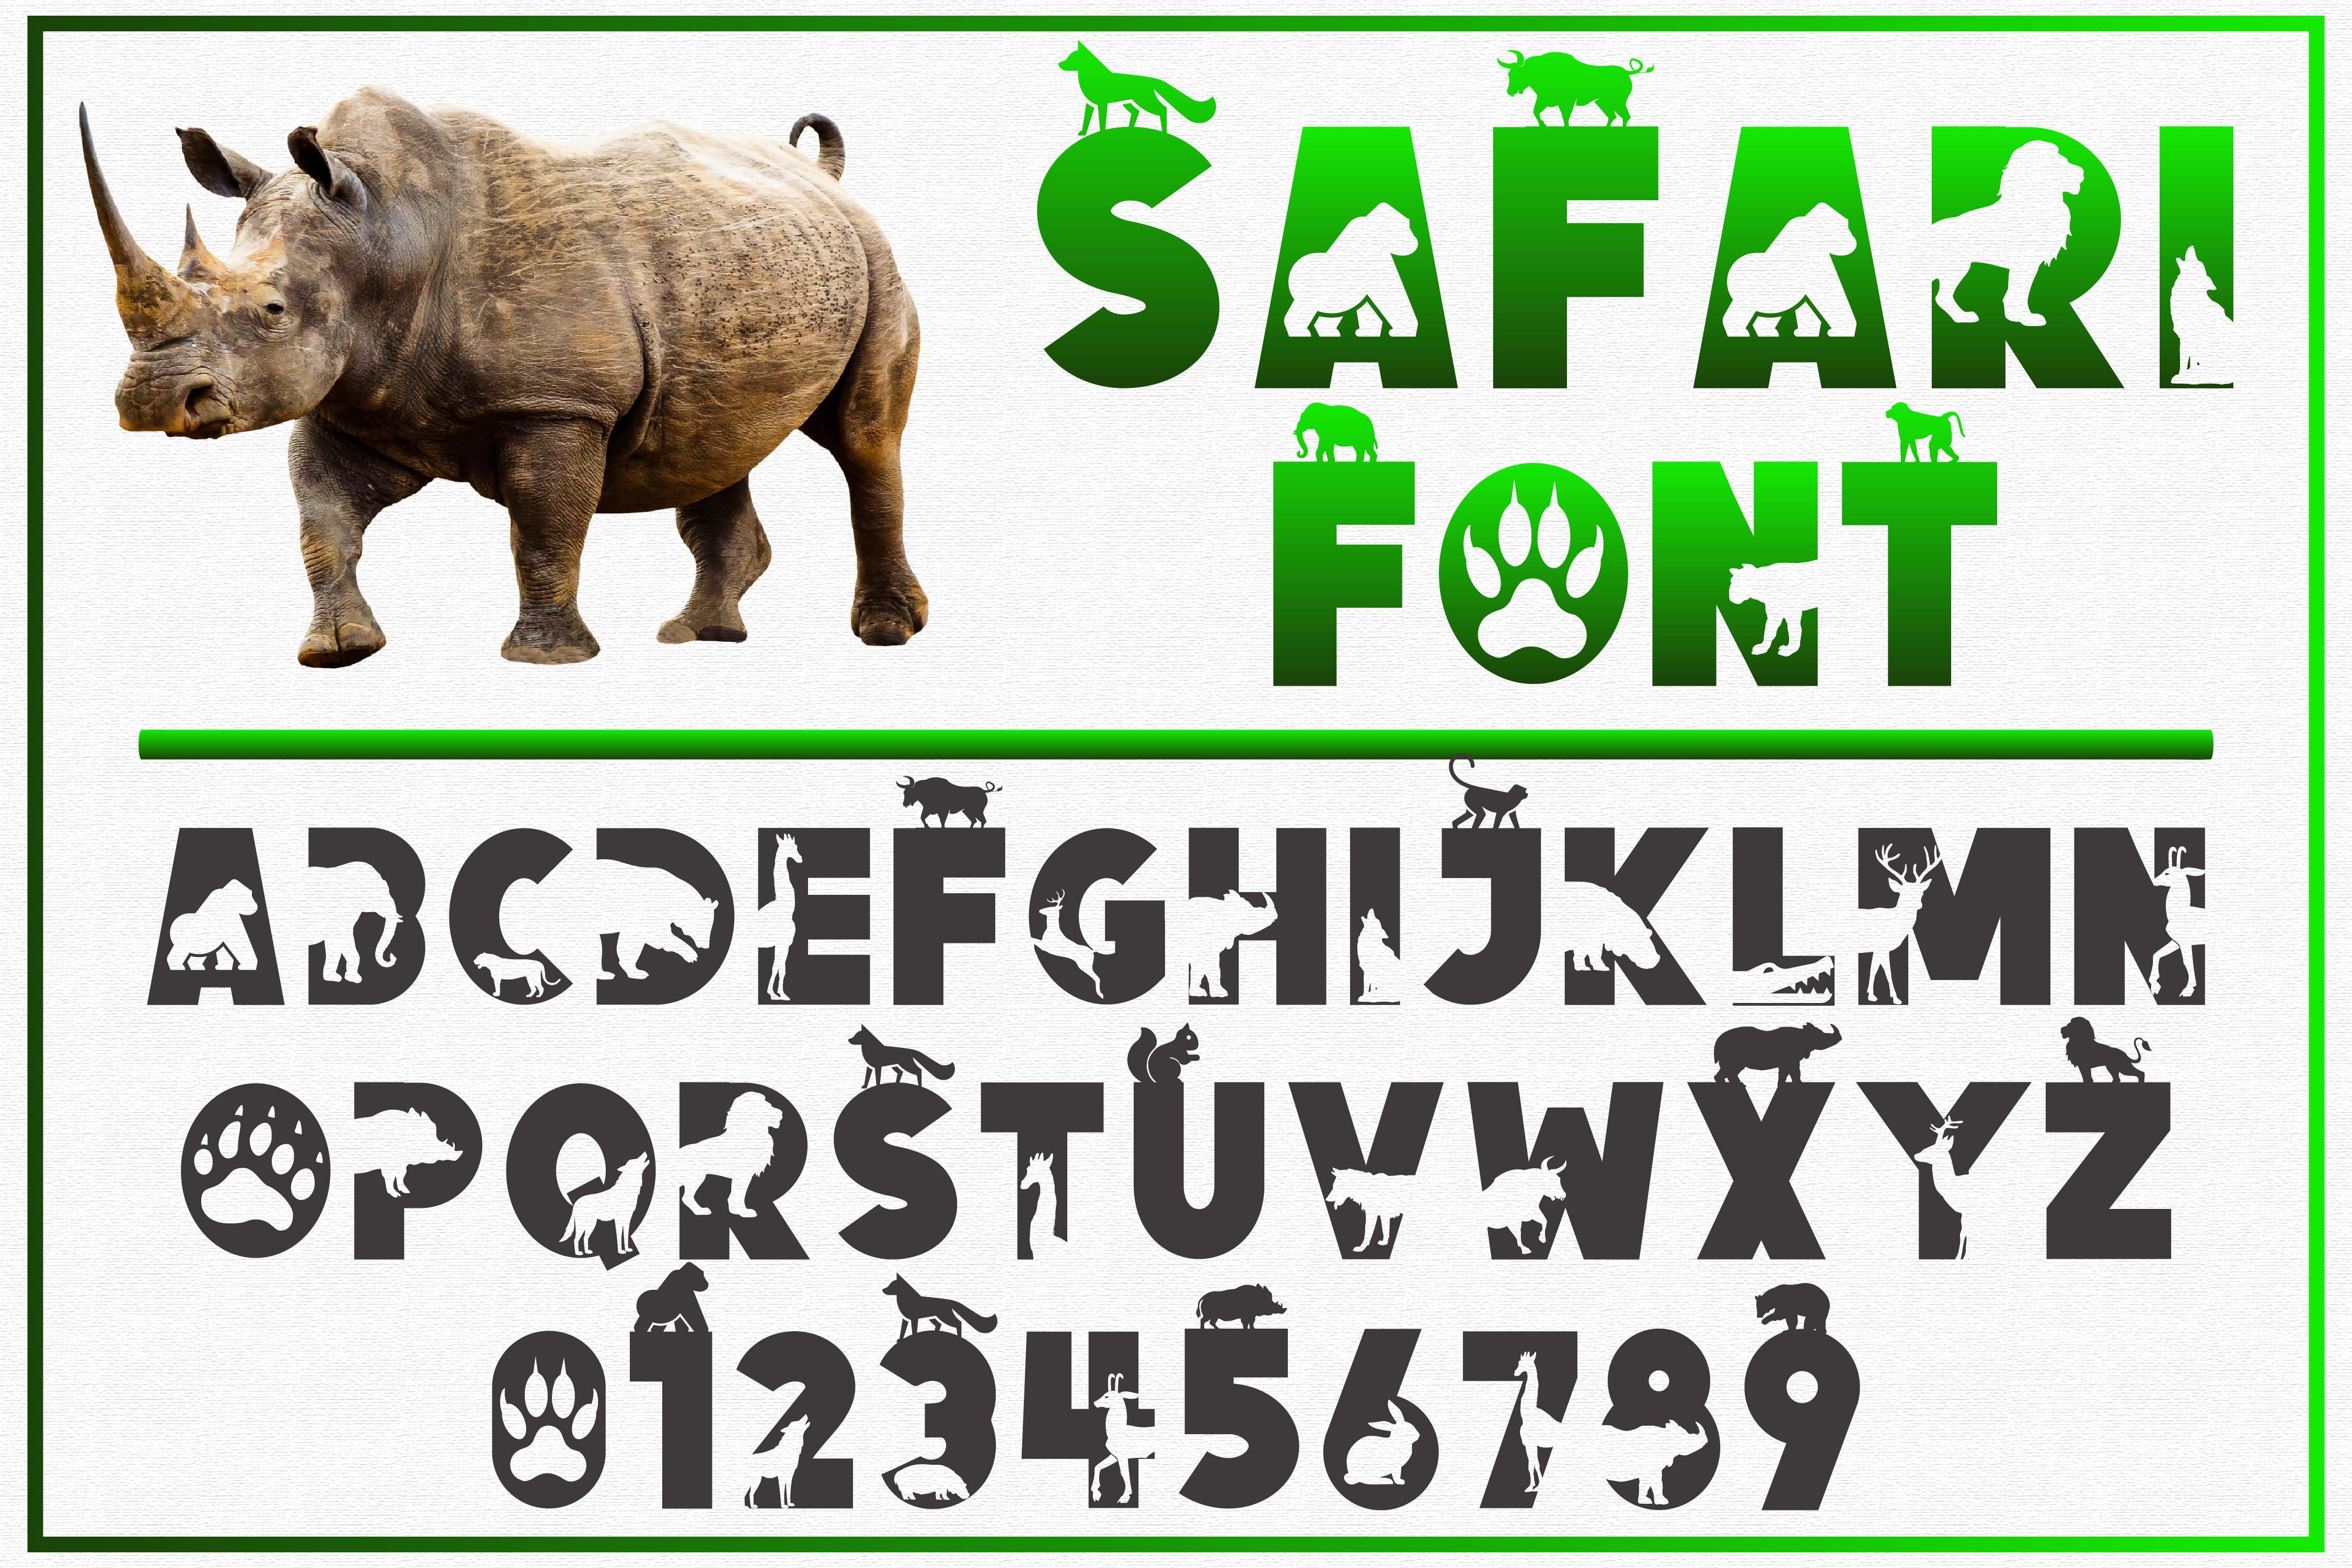 font style in safari